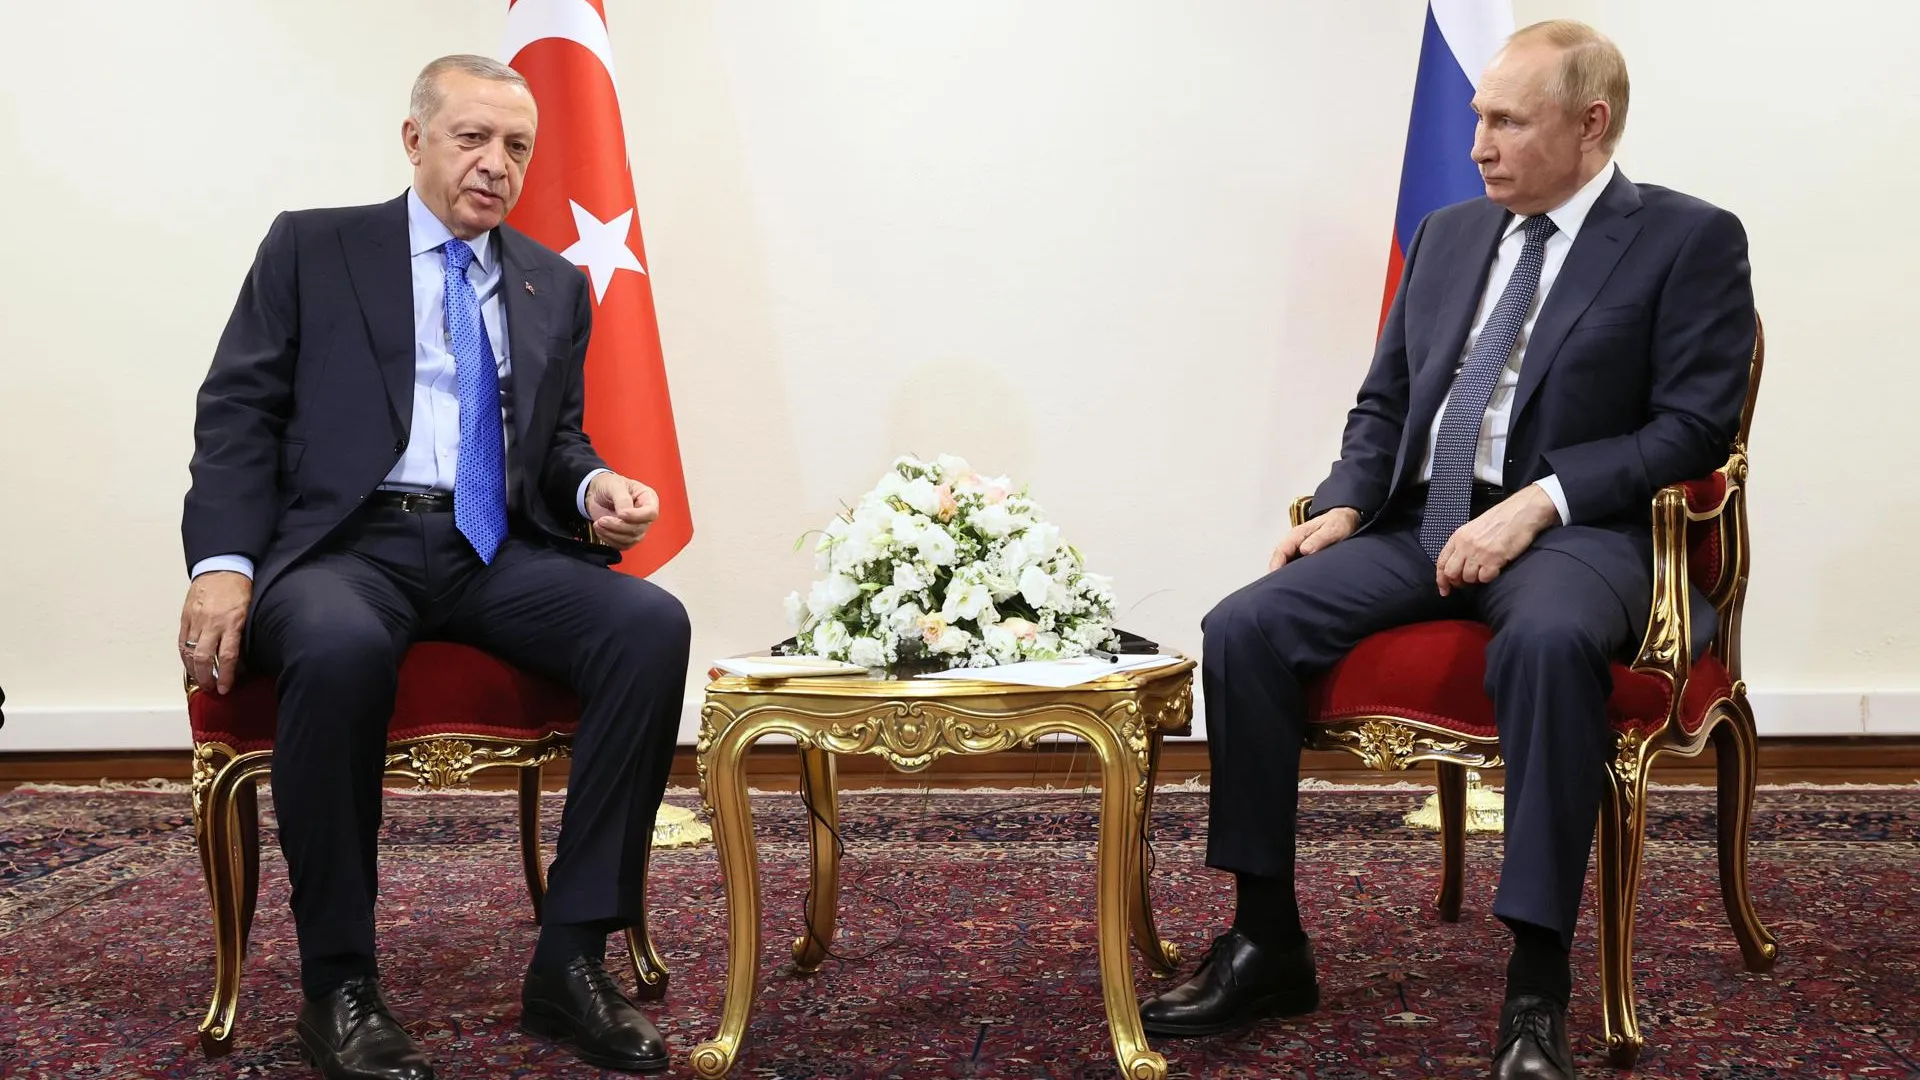 Переговоры Путина и Эрдогана: о чем пойдет речь на встрече в Сочи 4 сентября